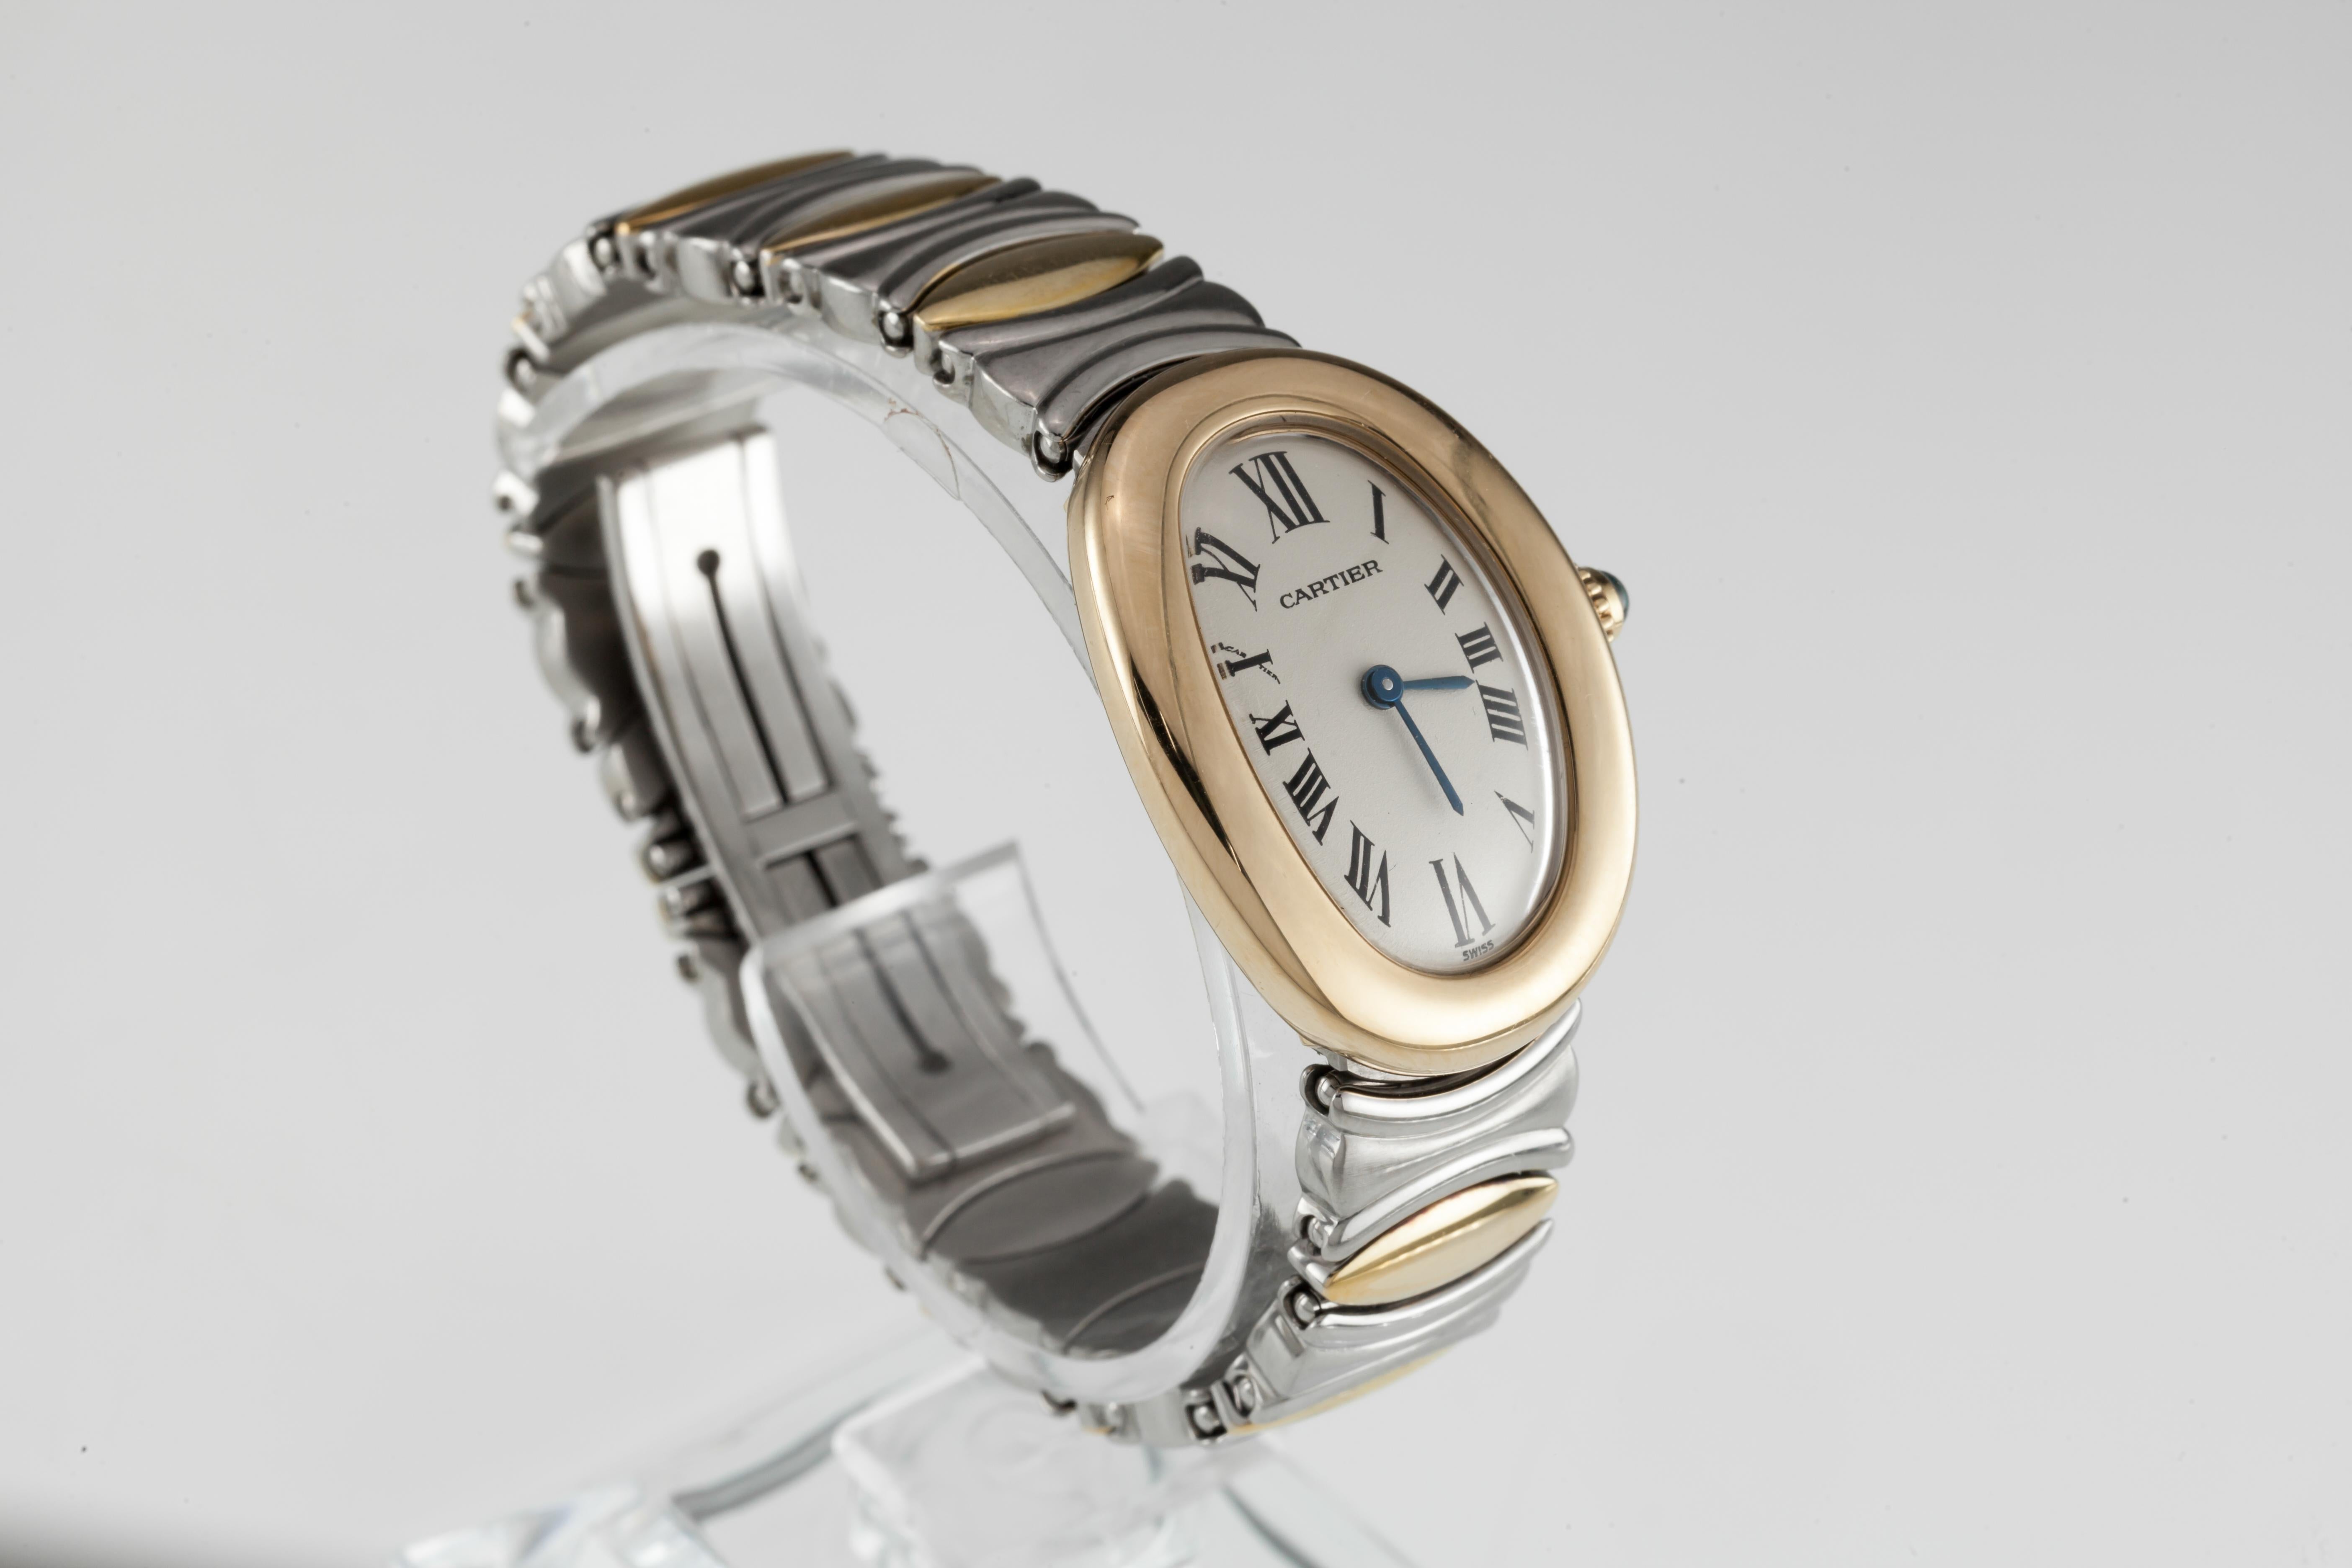 Cartier Vtg Women's Two-Tone Quartz Baignoire Watch Gorgeous !
Modèle : Baignoire
Numéro de série 2927
boîtier ovale en or jaune 18k avec couronne à cabochon saphir
22 mm de large (25 mm avec couronne)
31 mm de long
Cadran beige avec chiffres